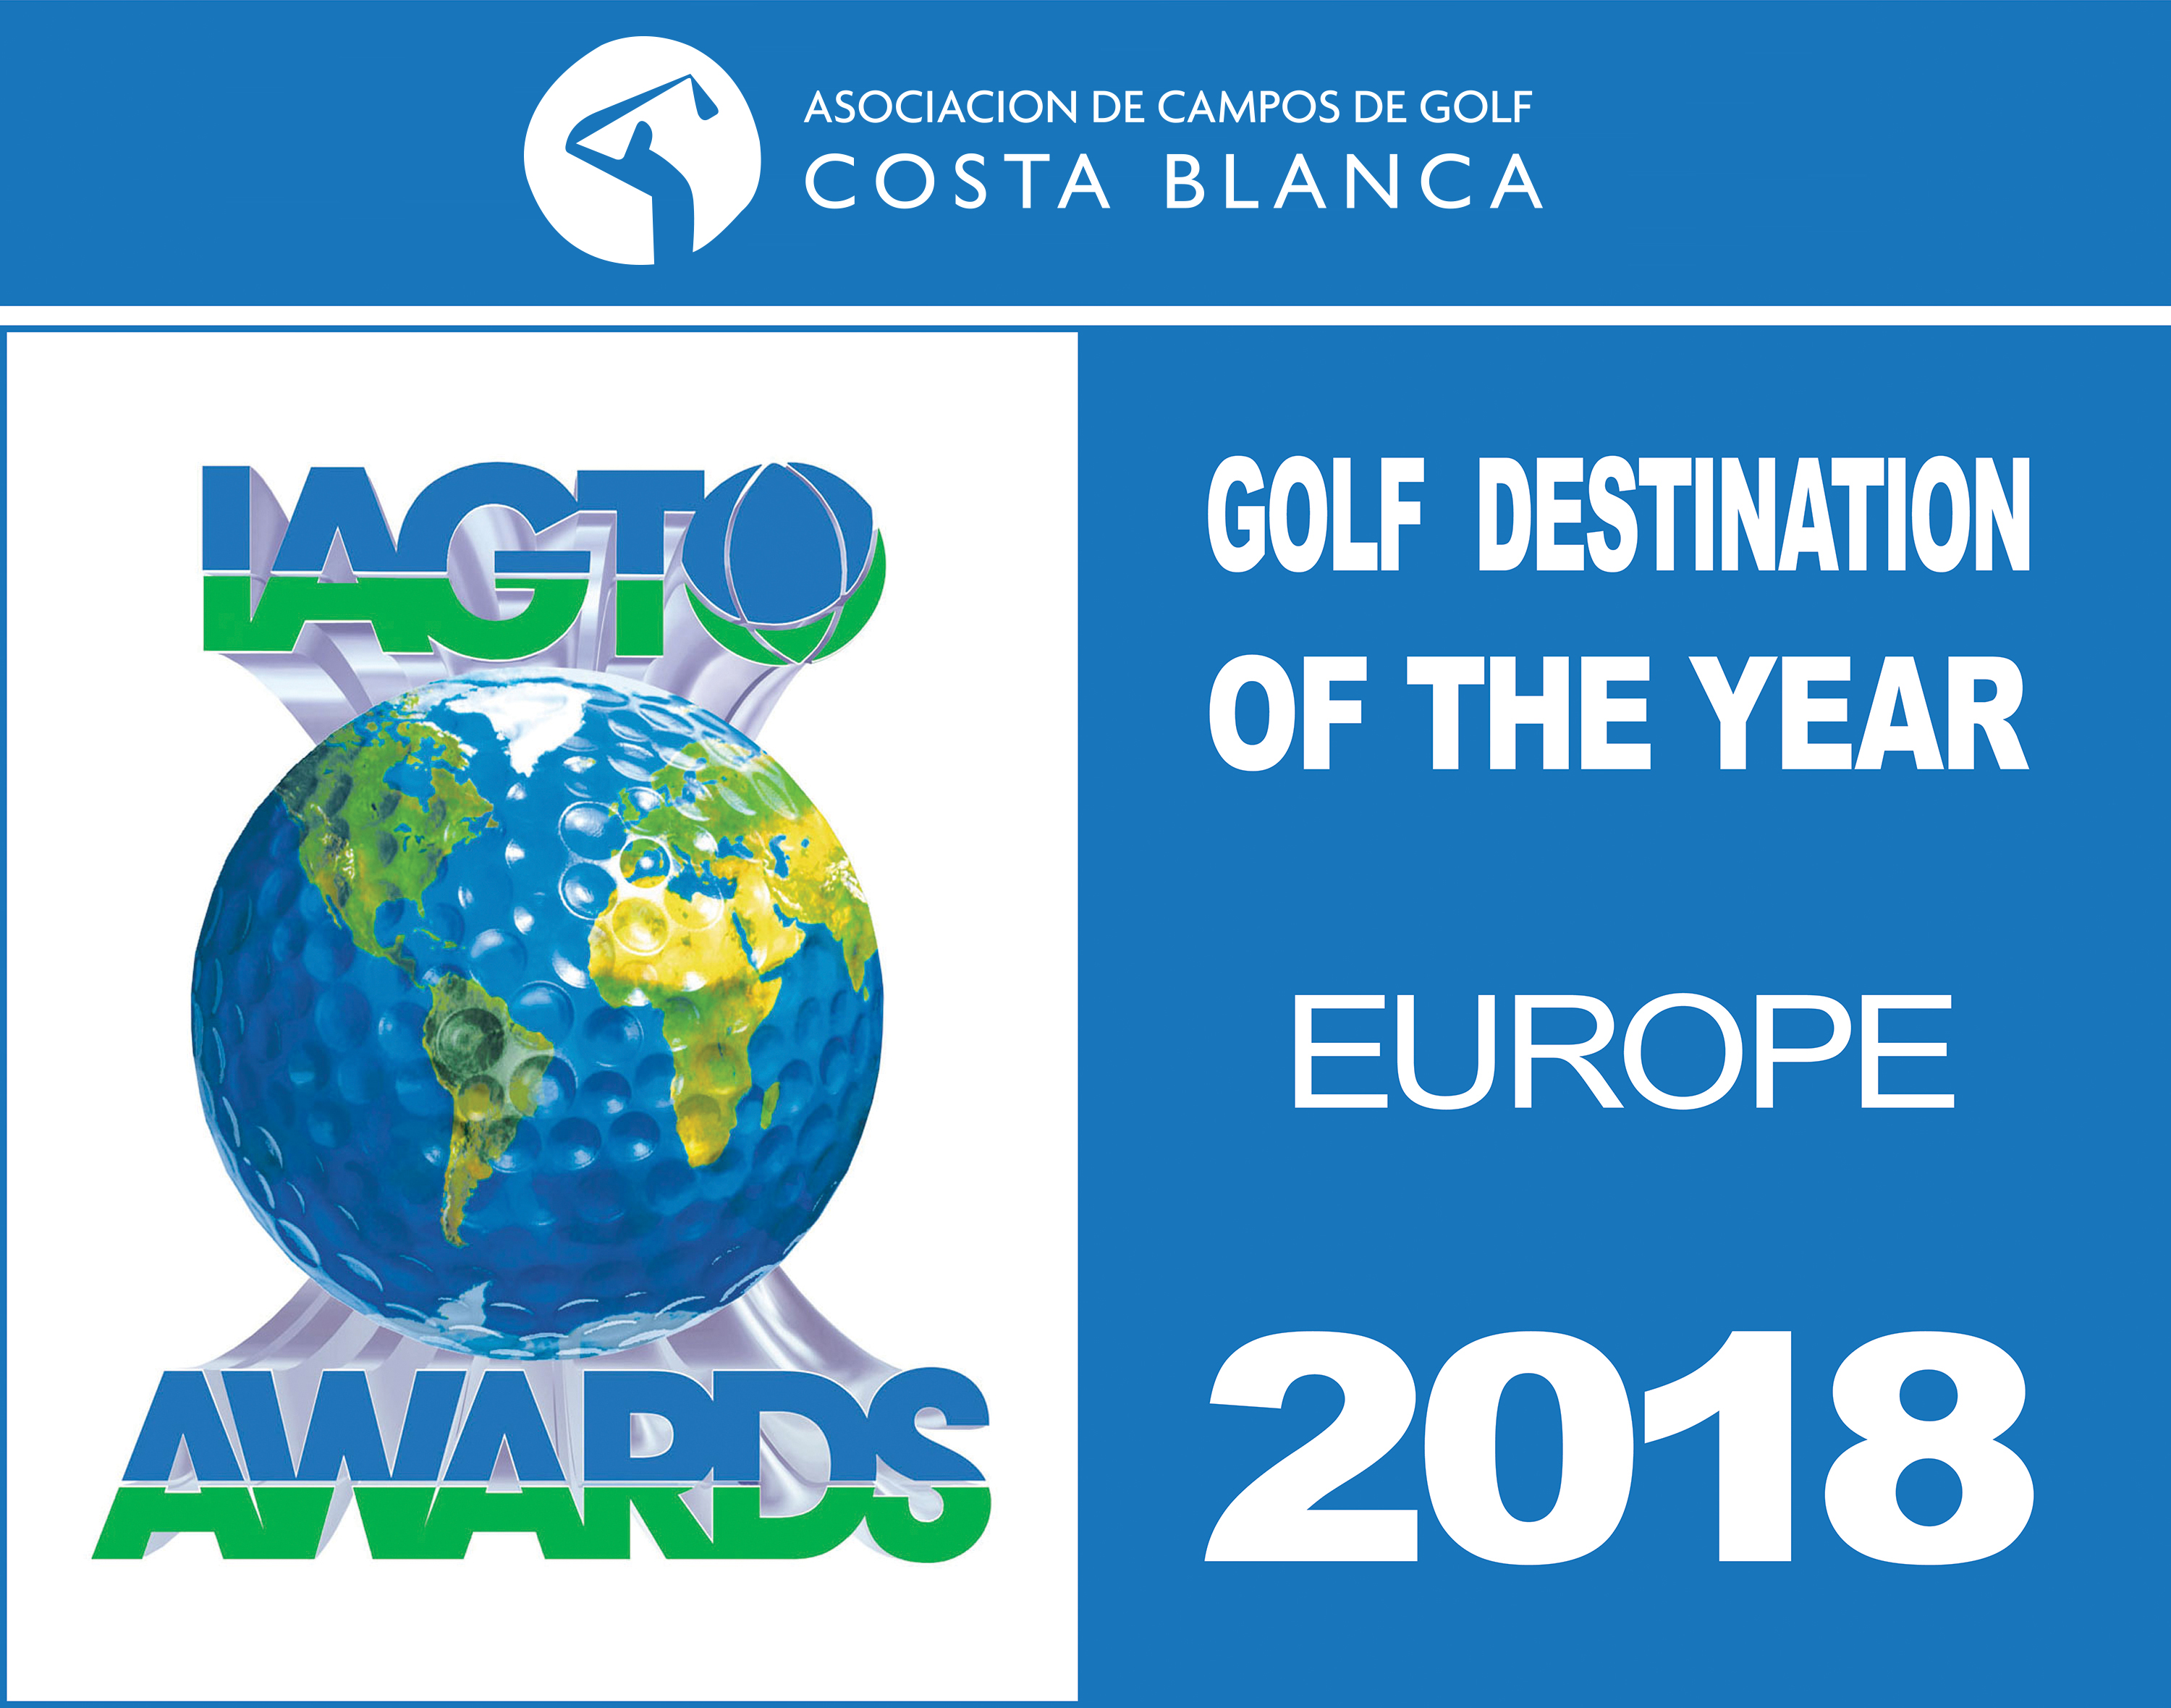 Destino europeo de golf del año, golf costa blanca, asociacion